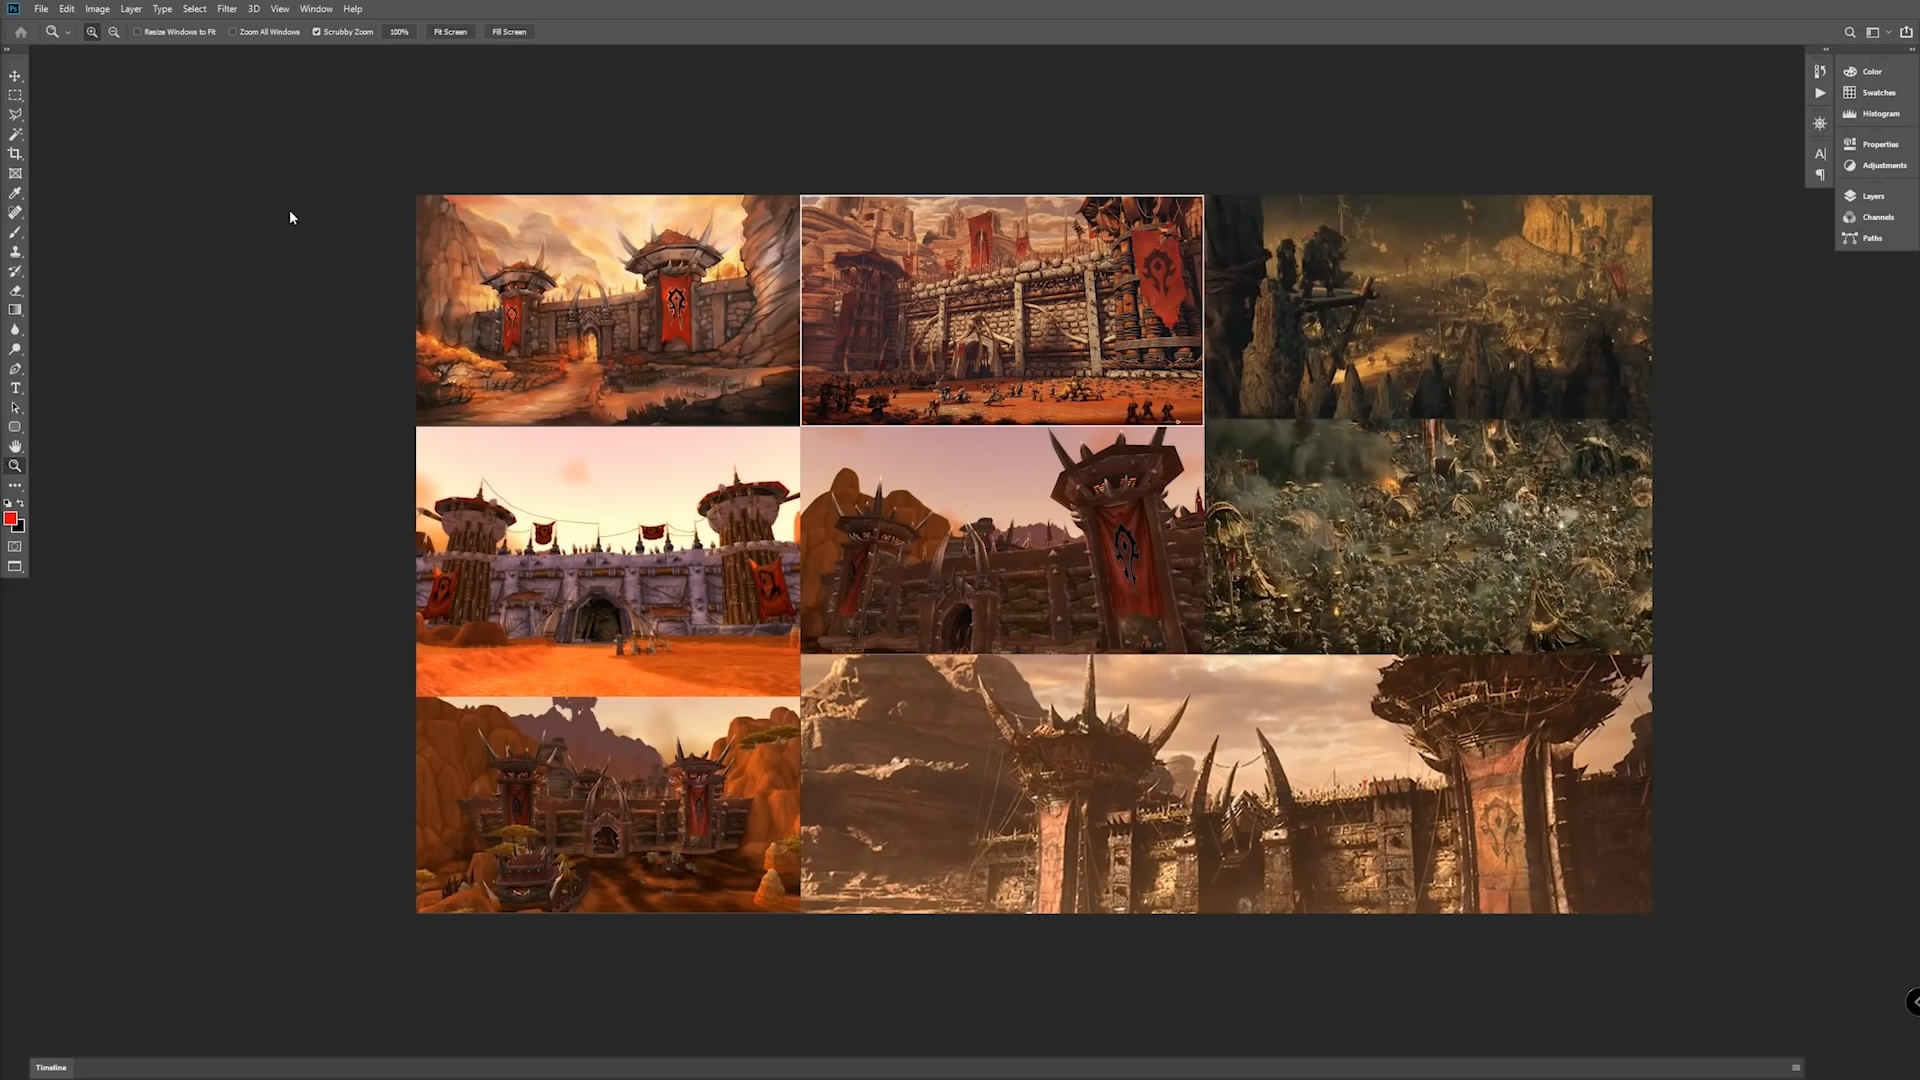 虚幻4引擎重制《魔兽世界》奥格瑞玛城门 画面美爆